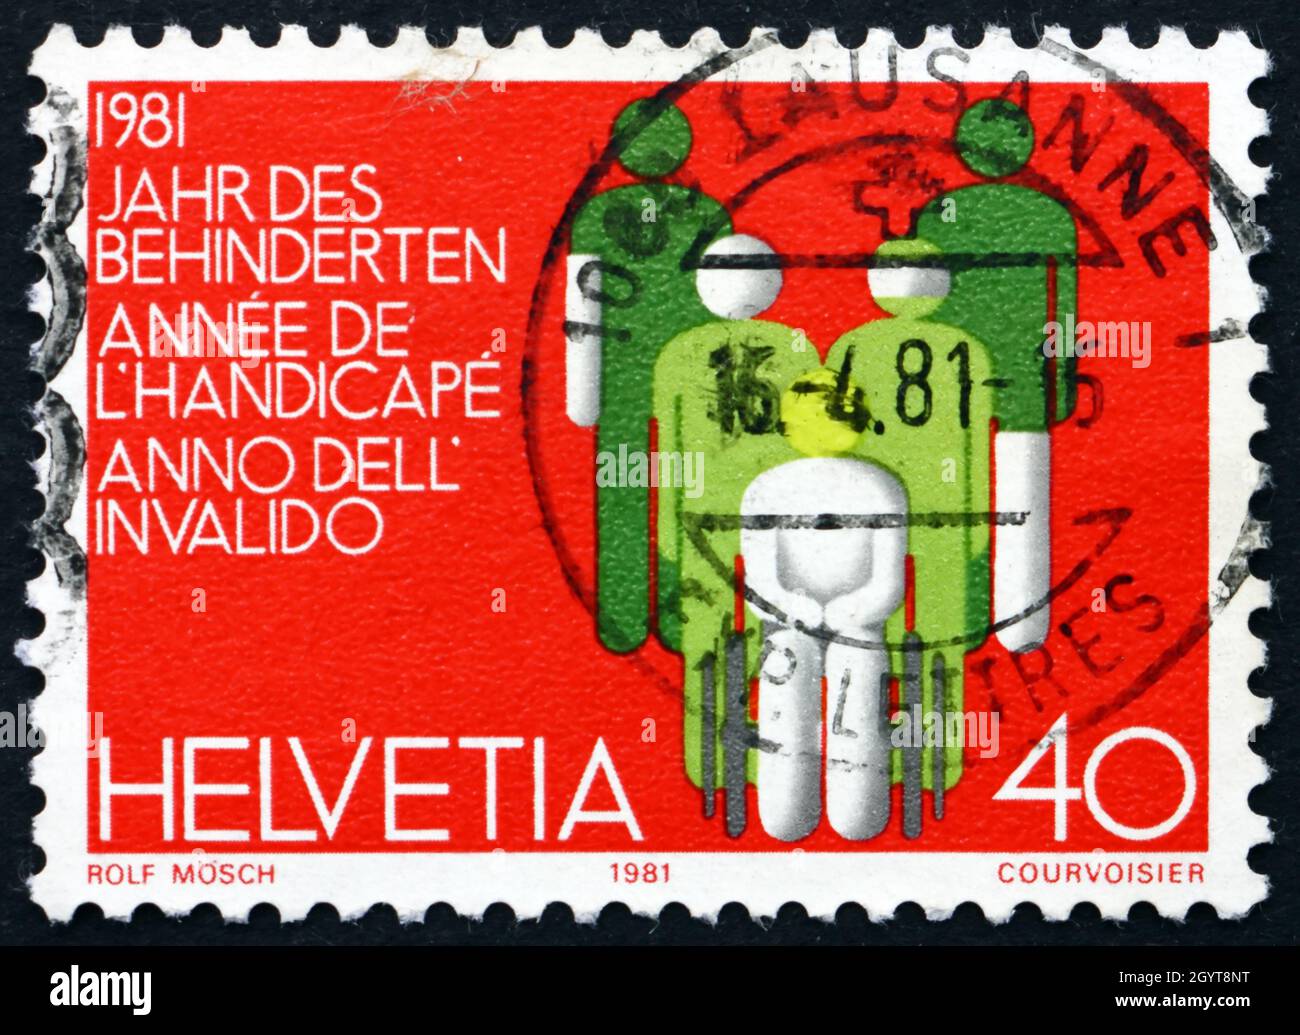 SCHWEIZ - UM 1981: Eine in der Schweiz gedruckte Marke, die dem Internationalen Jahr der Behinderten gewidmet ist, um 1981 Stockfoto